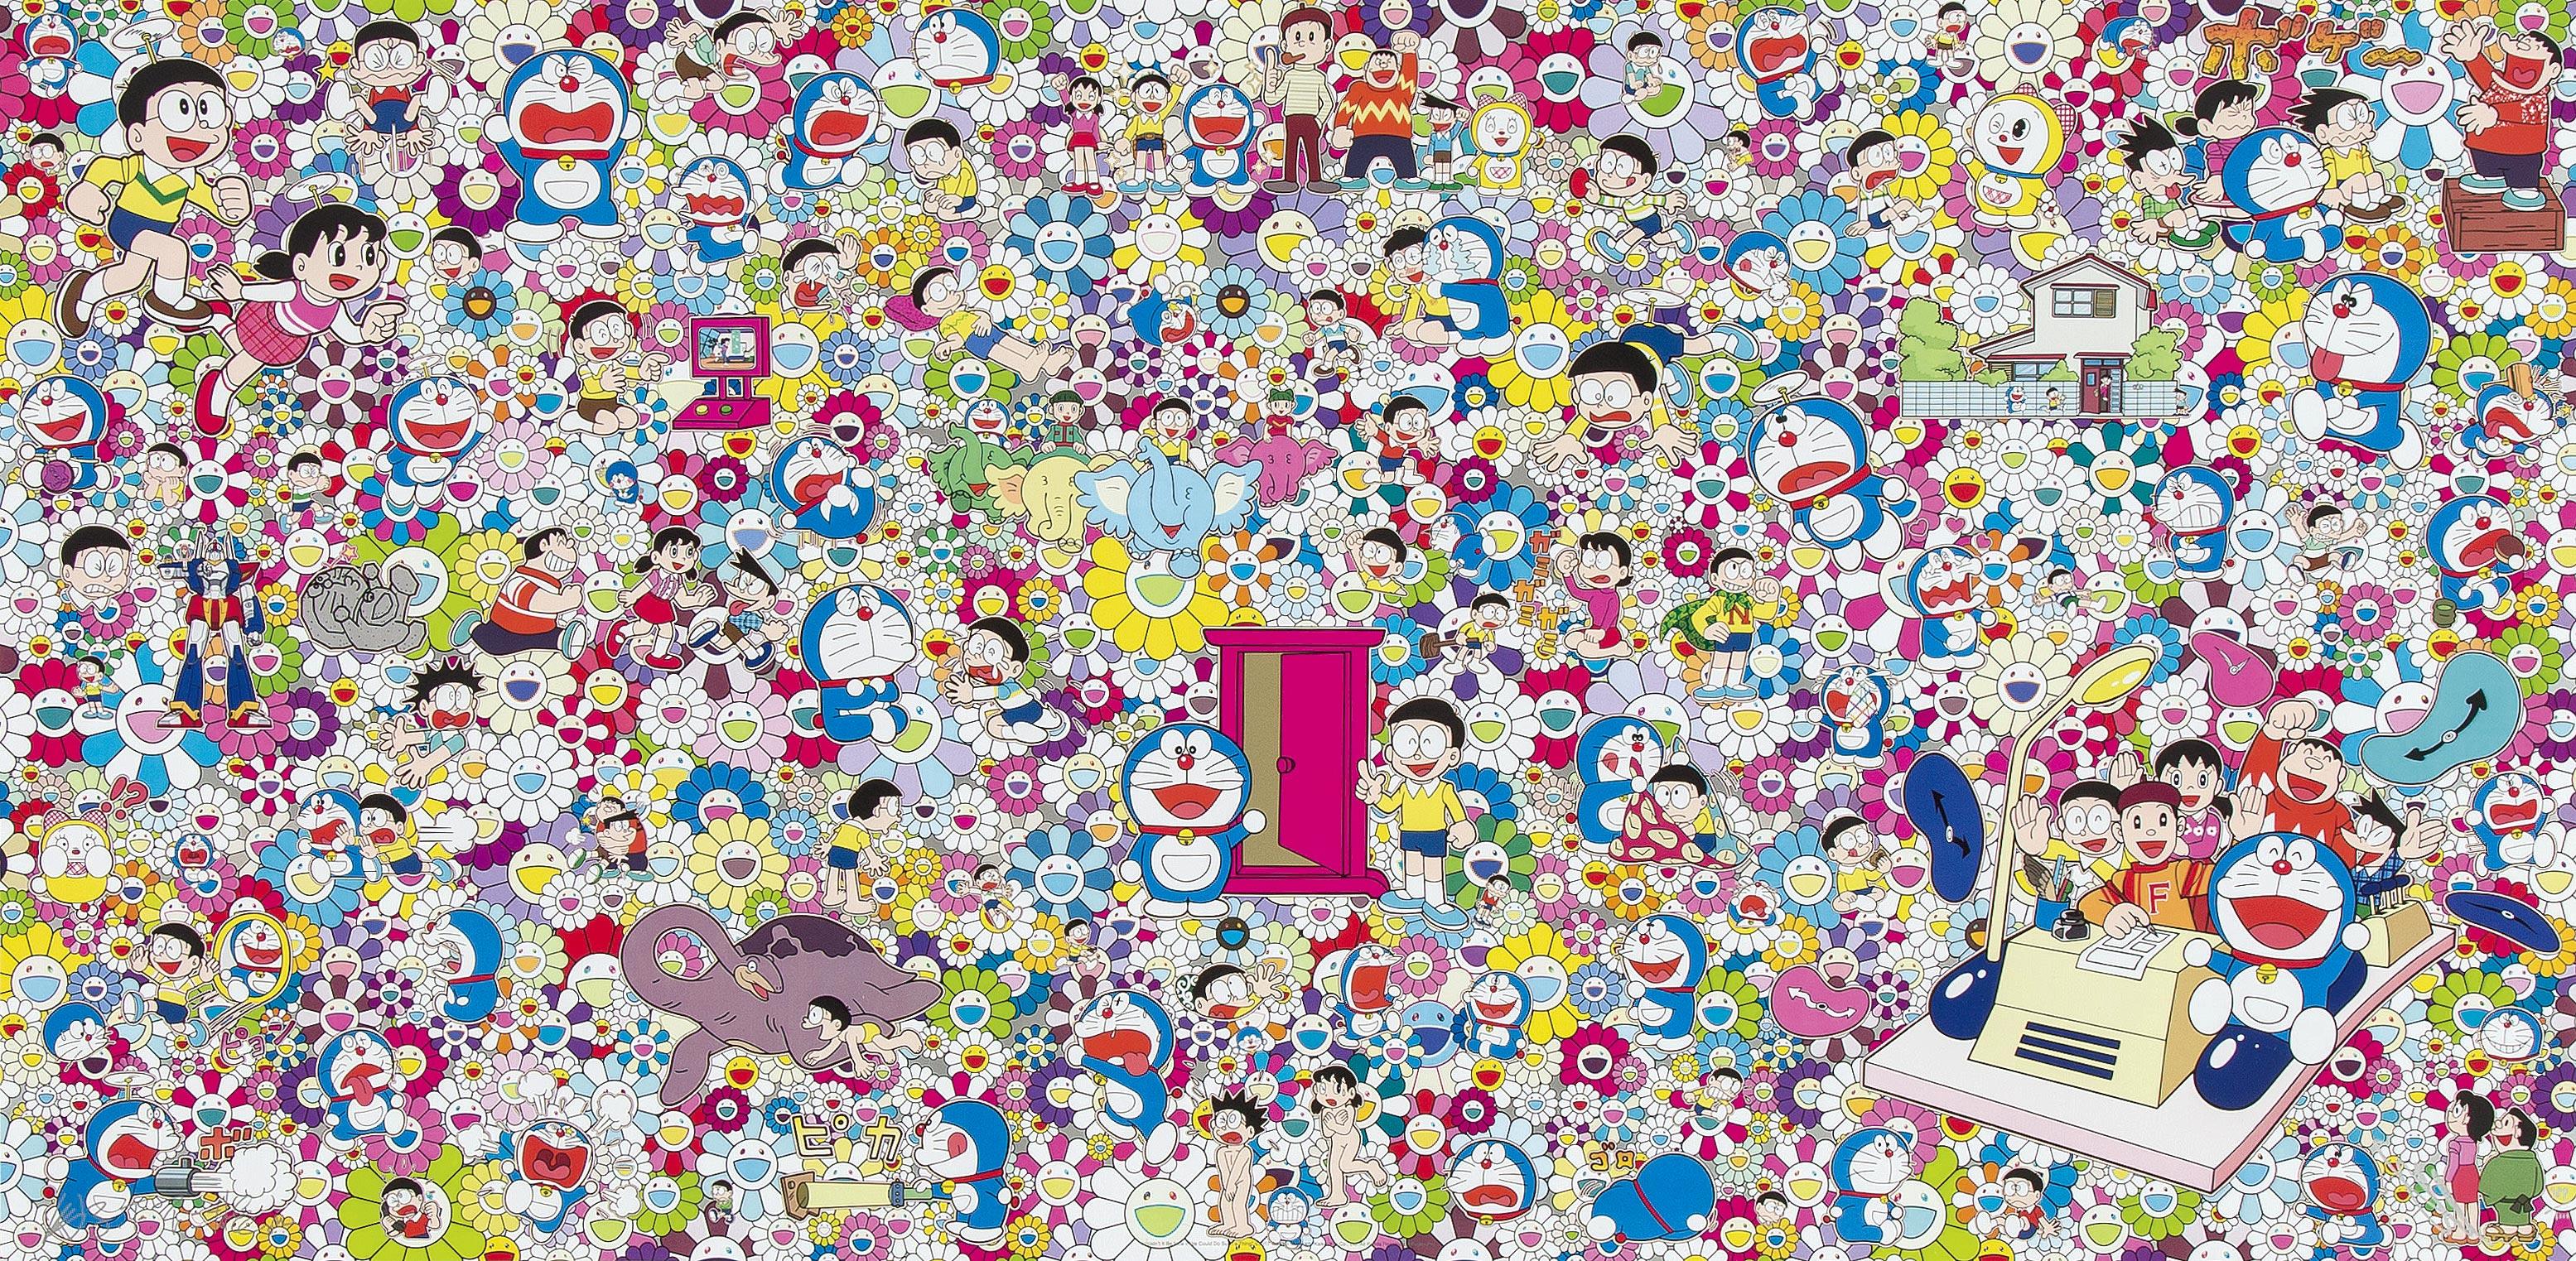 Takashi Murakami Figurative Print – Würde es nicht schön sein... Limitierte Auflage (Druck) von Murakami, signiert und nummeriert